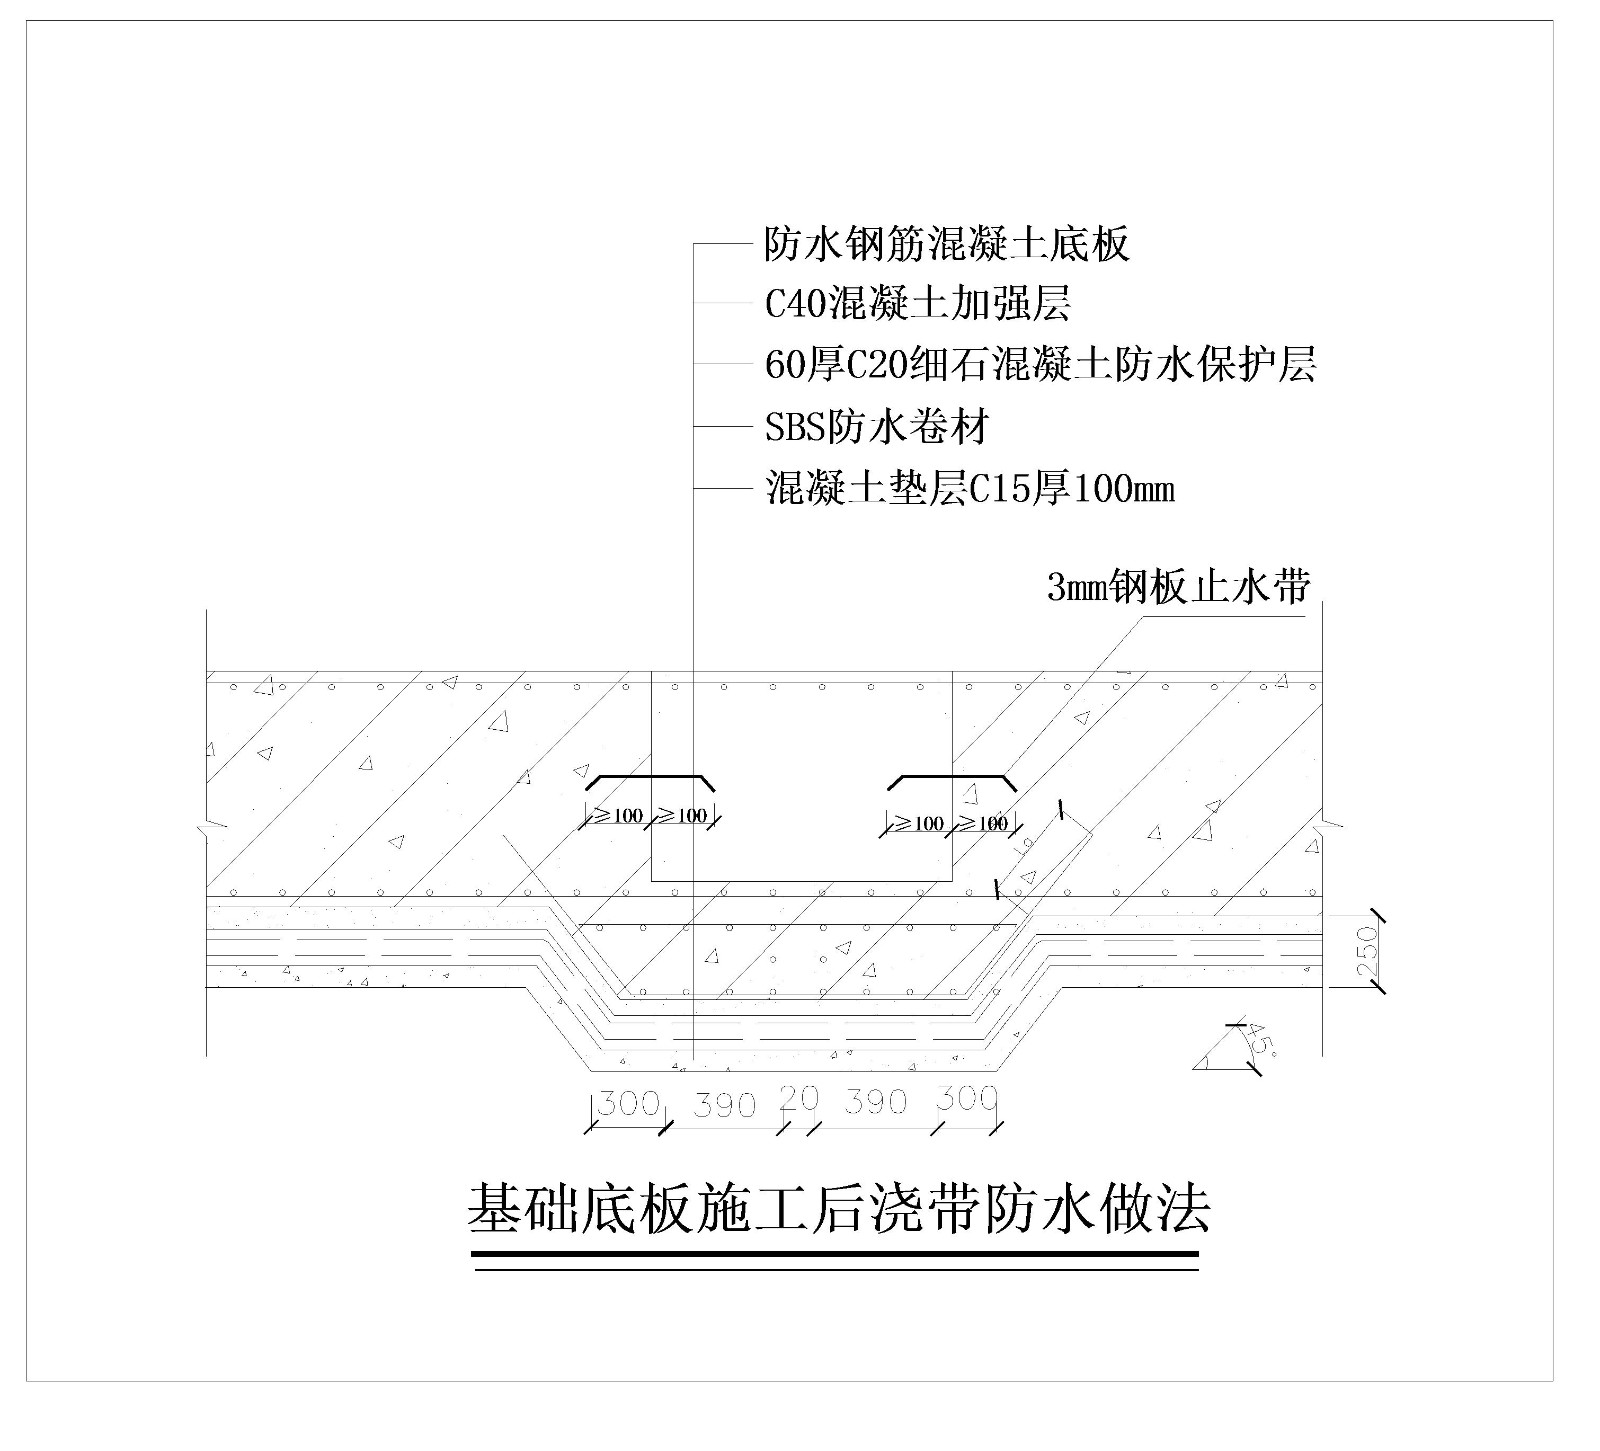 北京某高层公寓基础底板施工后浇带防水做法示意图